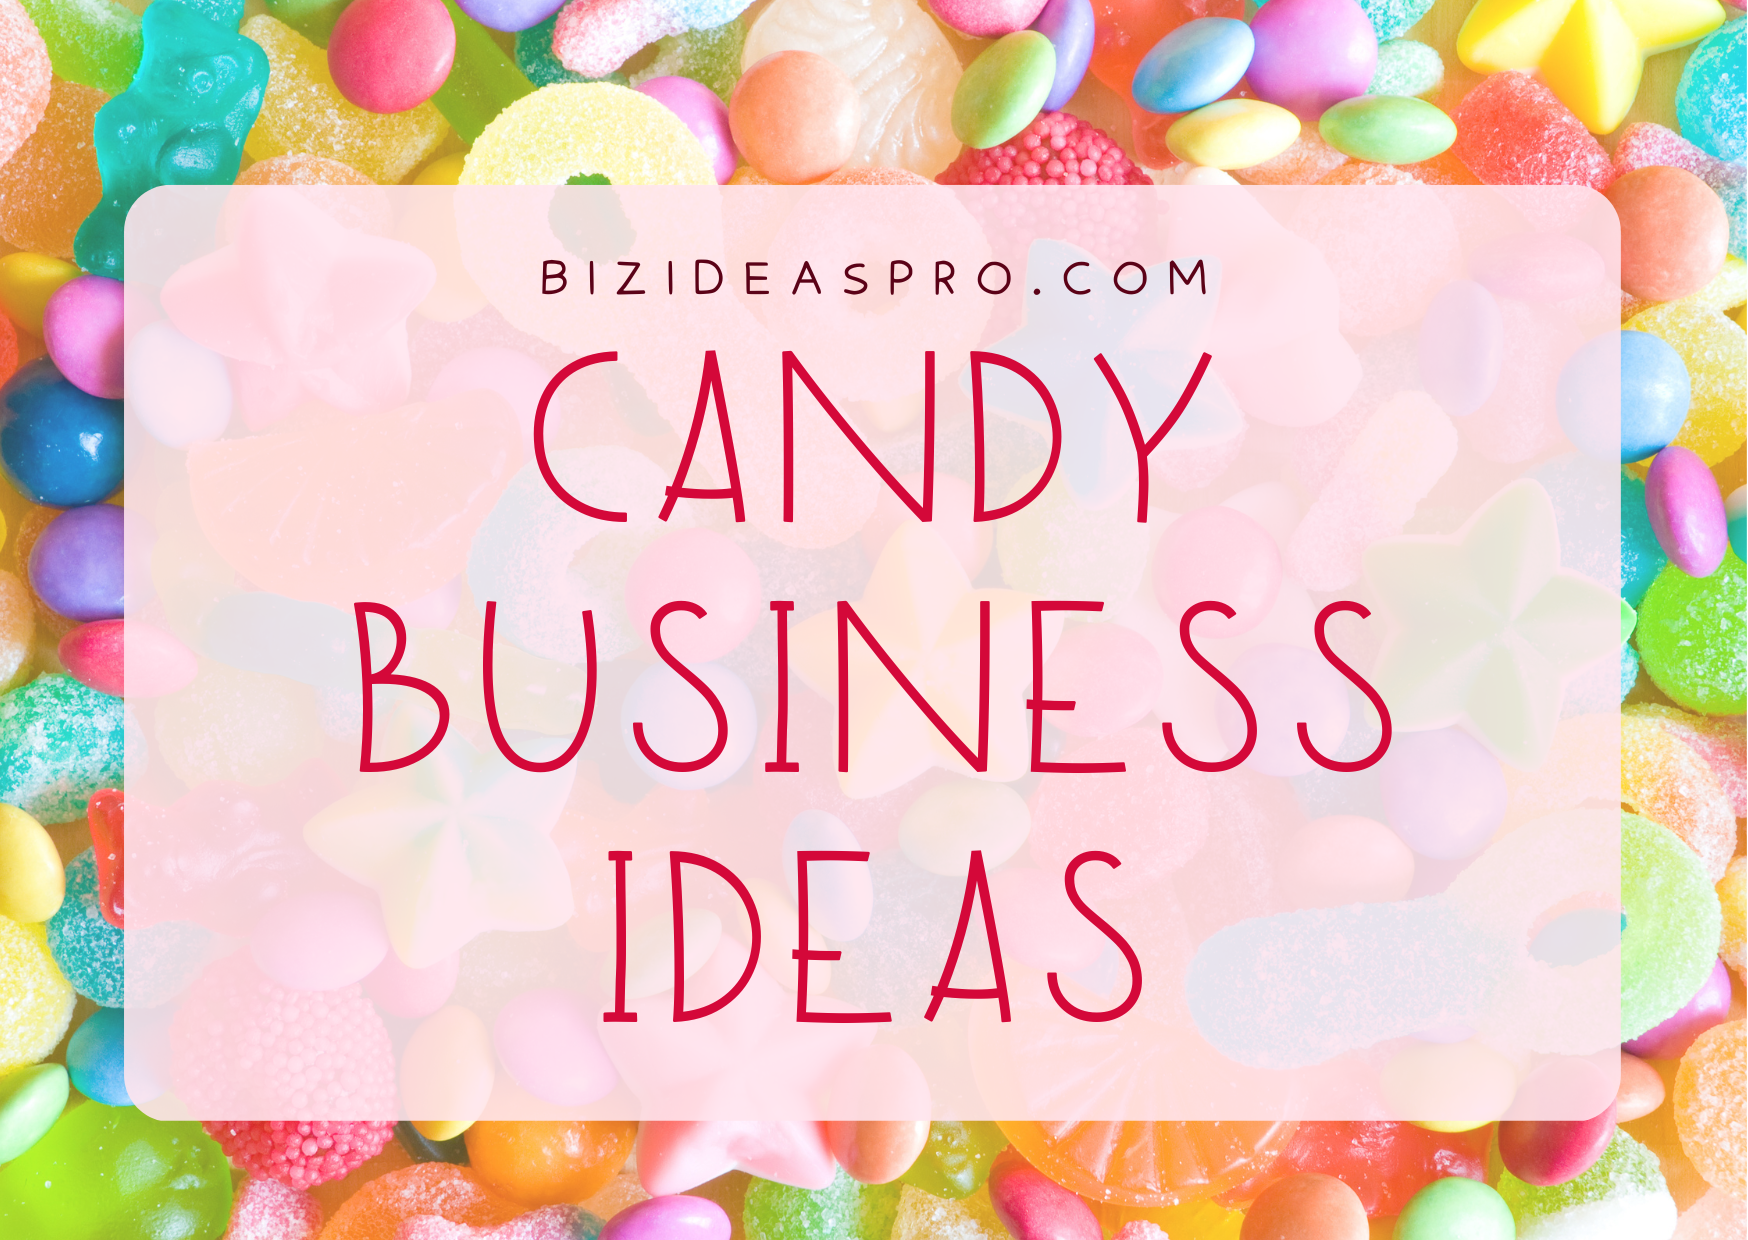 candy business ideas bizideaspro.com